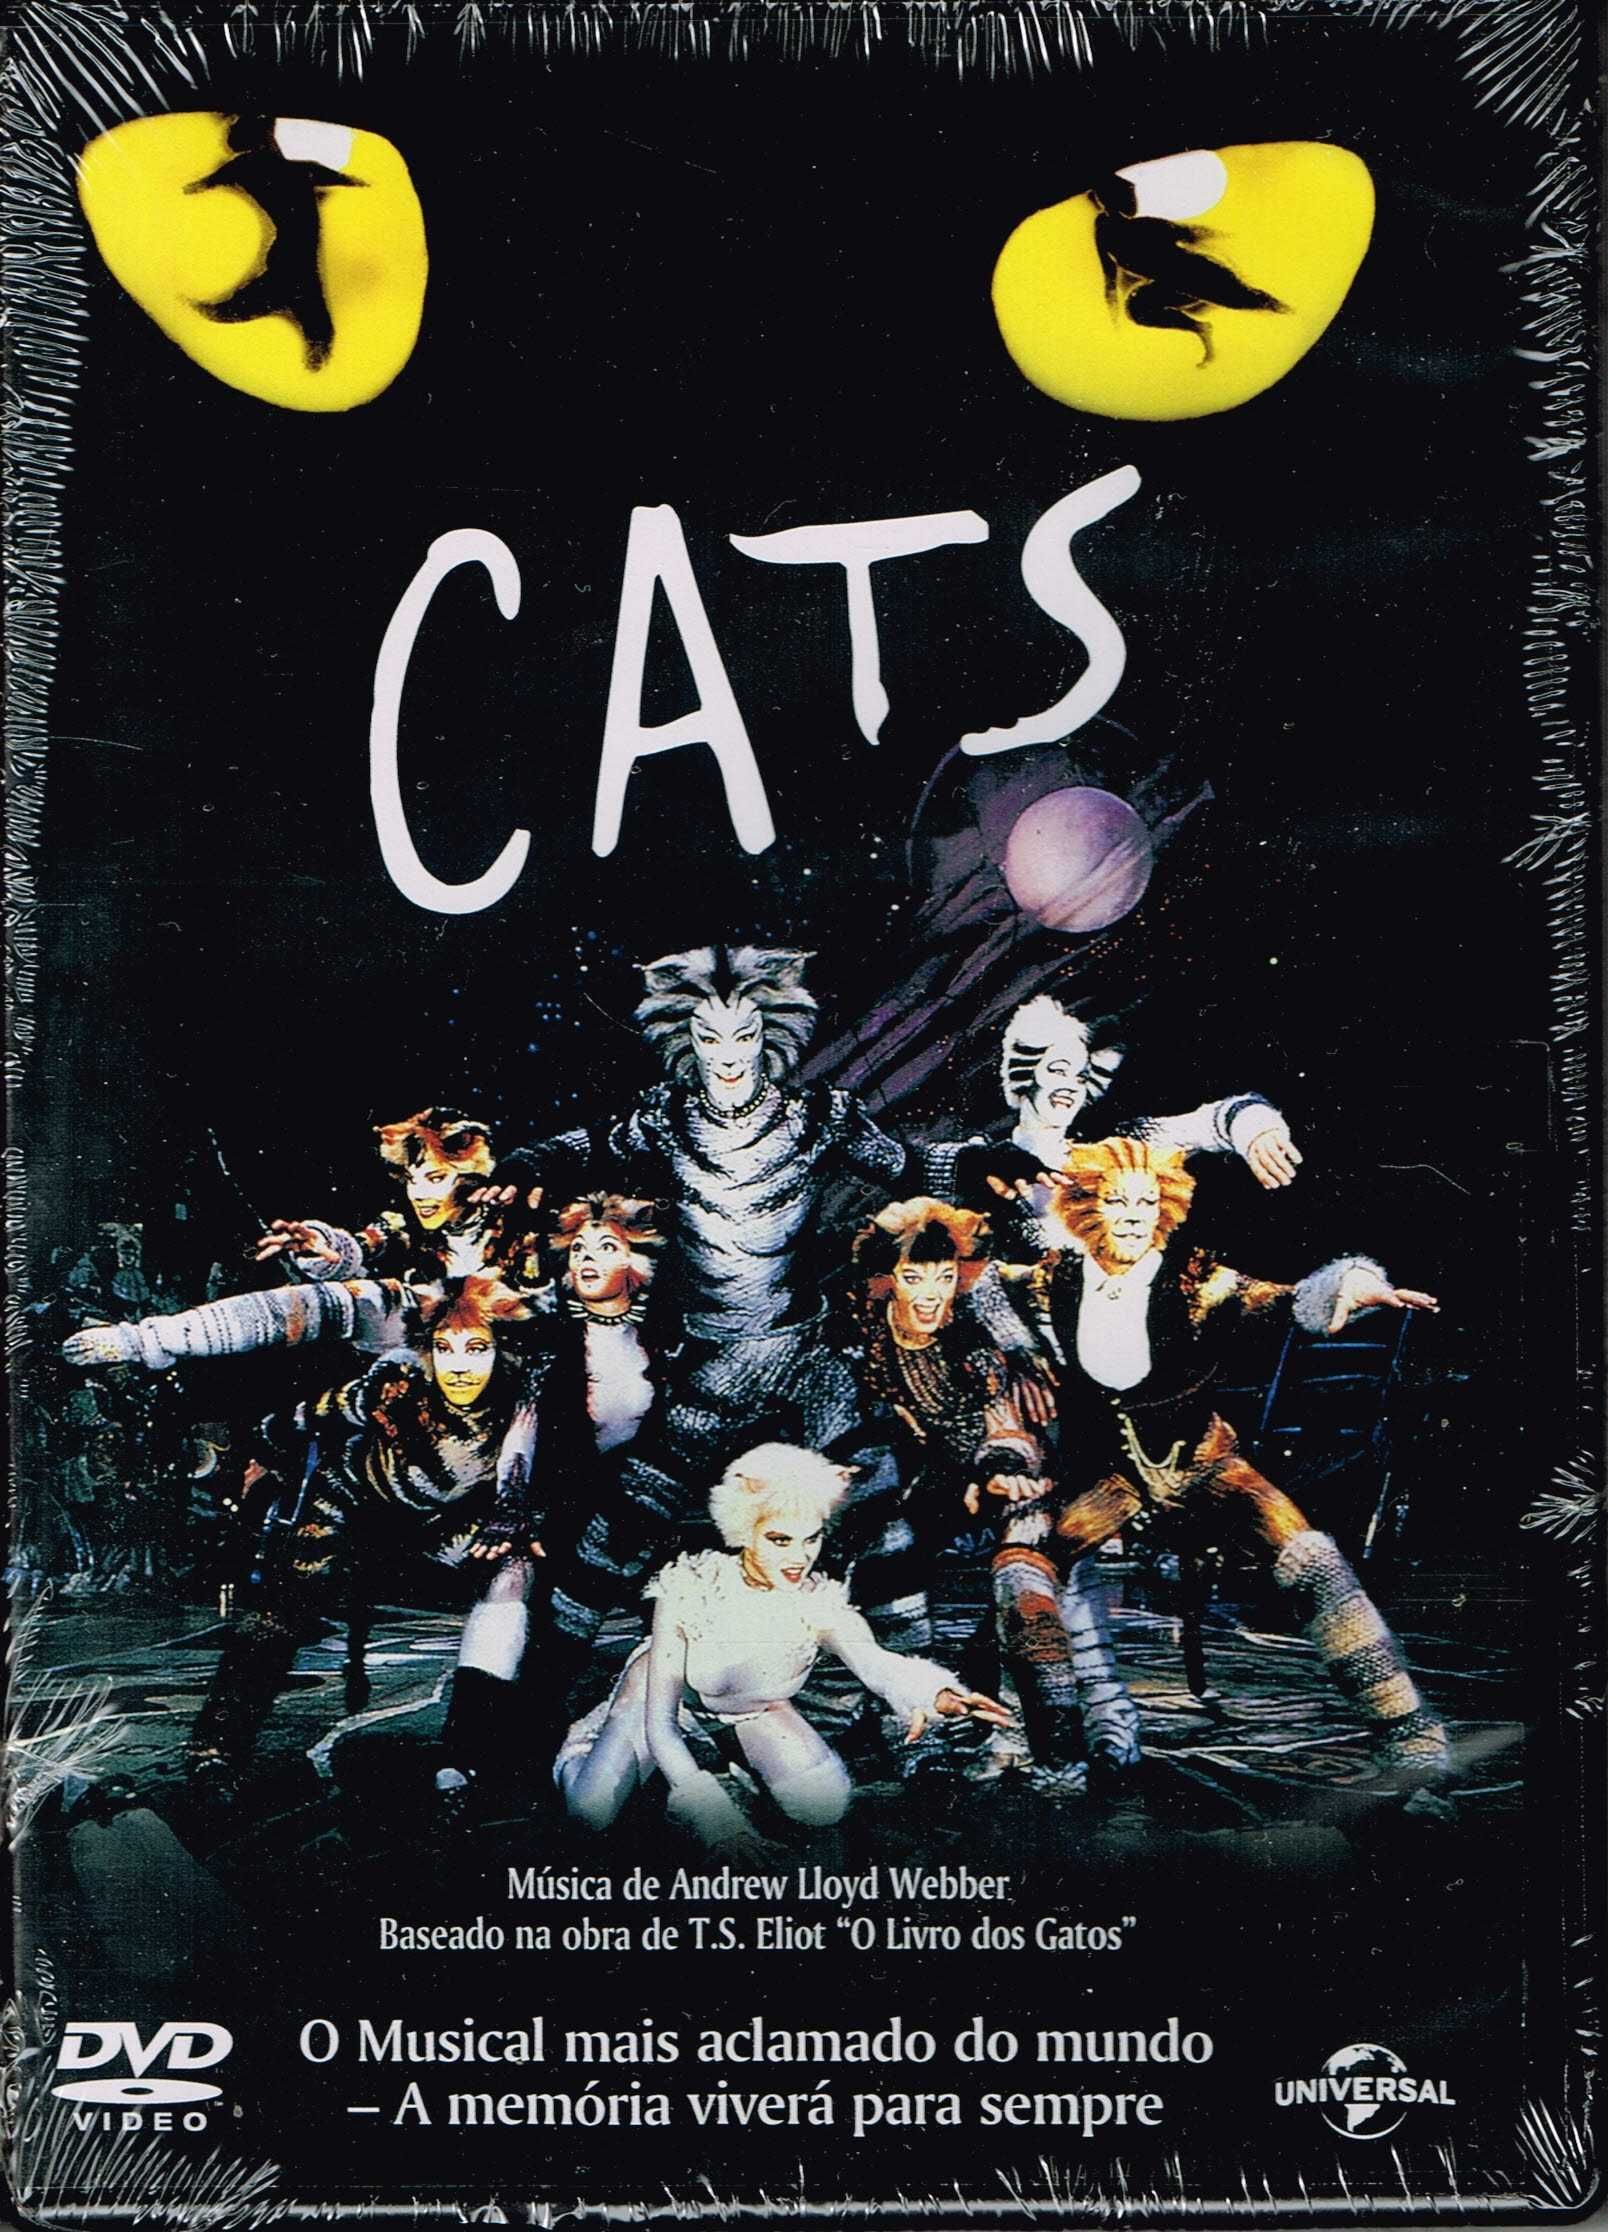 Filme em DVD: Cats (David Mallet) - NOVO! SELADO!